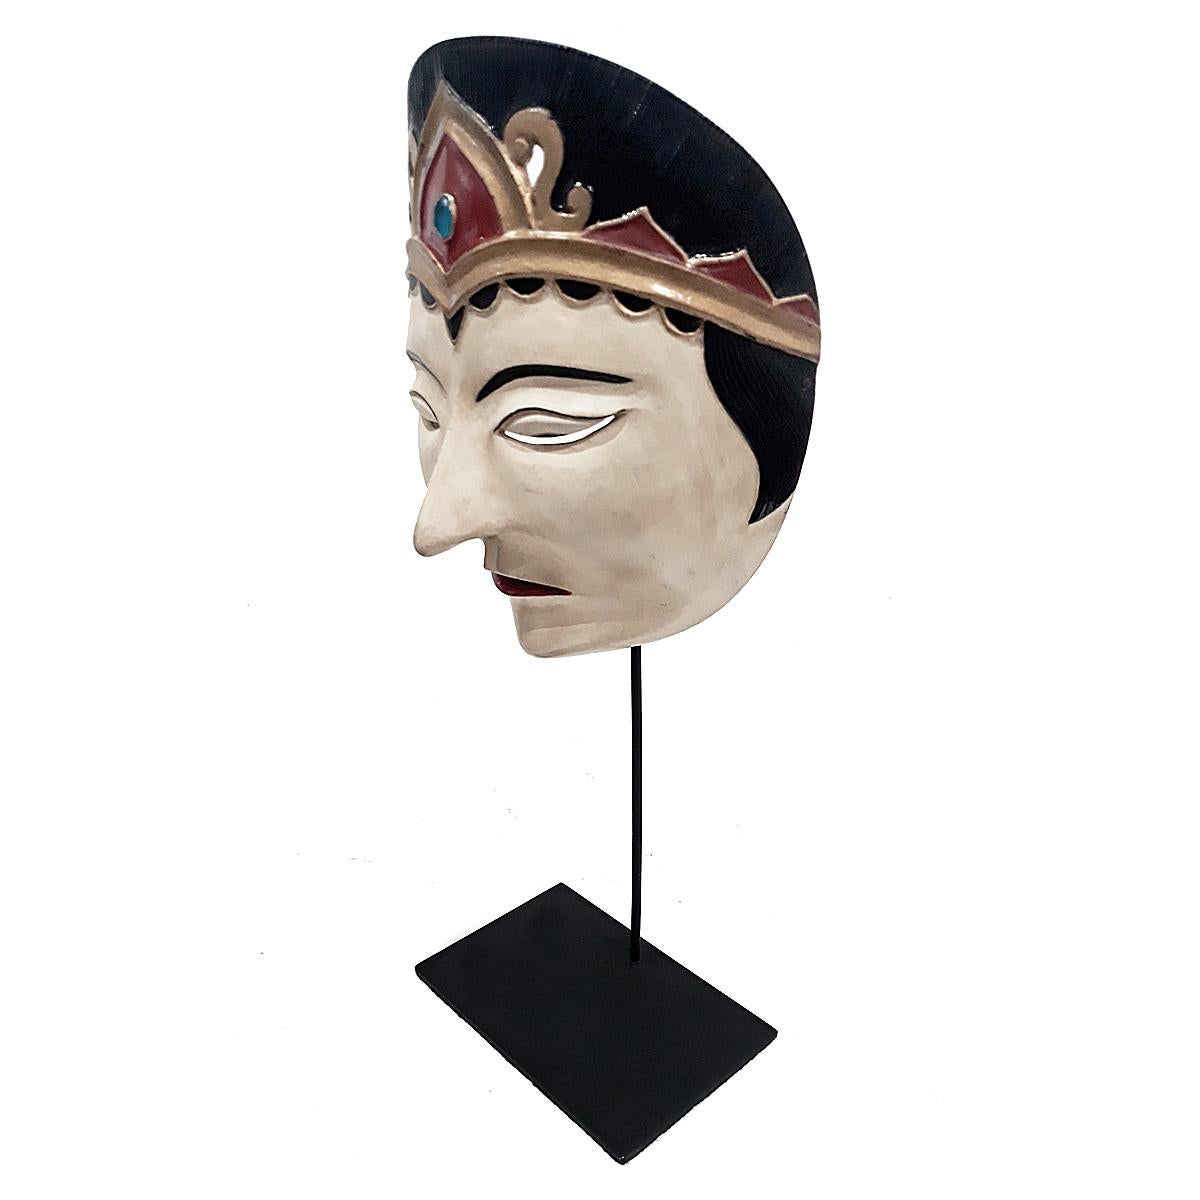 Masque de théâtre vintage de Bali, Indonésie, vers 1975-1980. 
Teck polychrome sculpté à la main, monté sur un socle en métal noir.

Ce type de masque est utilisé lors des danses indonésiennes Topeng ou théâtre des masques, où des histoires